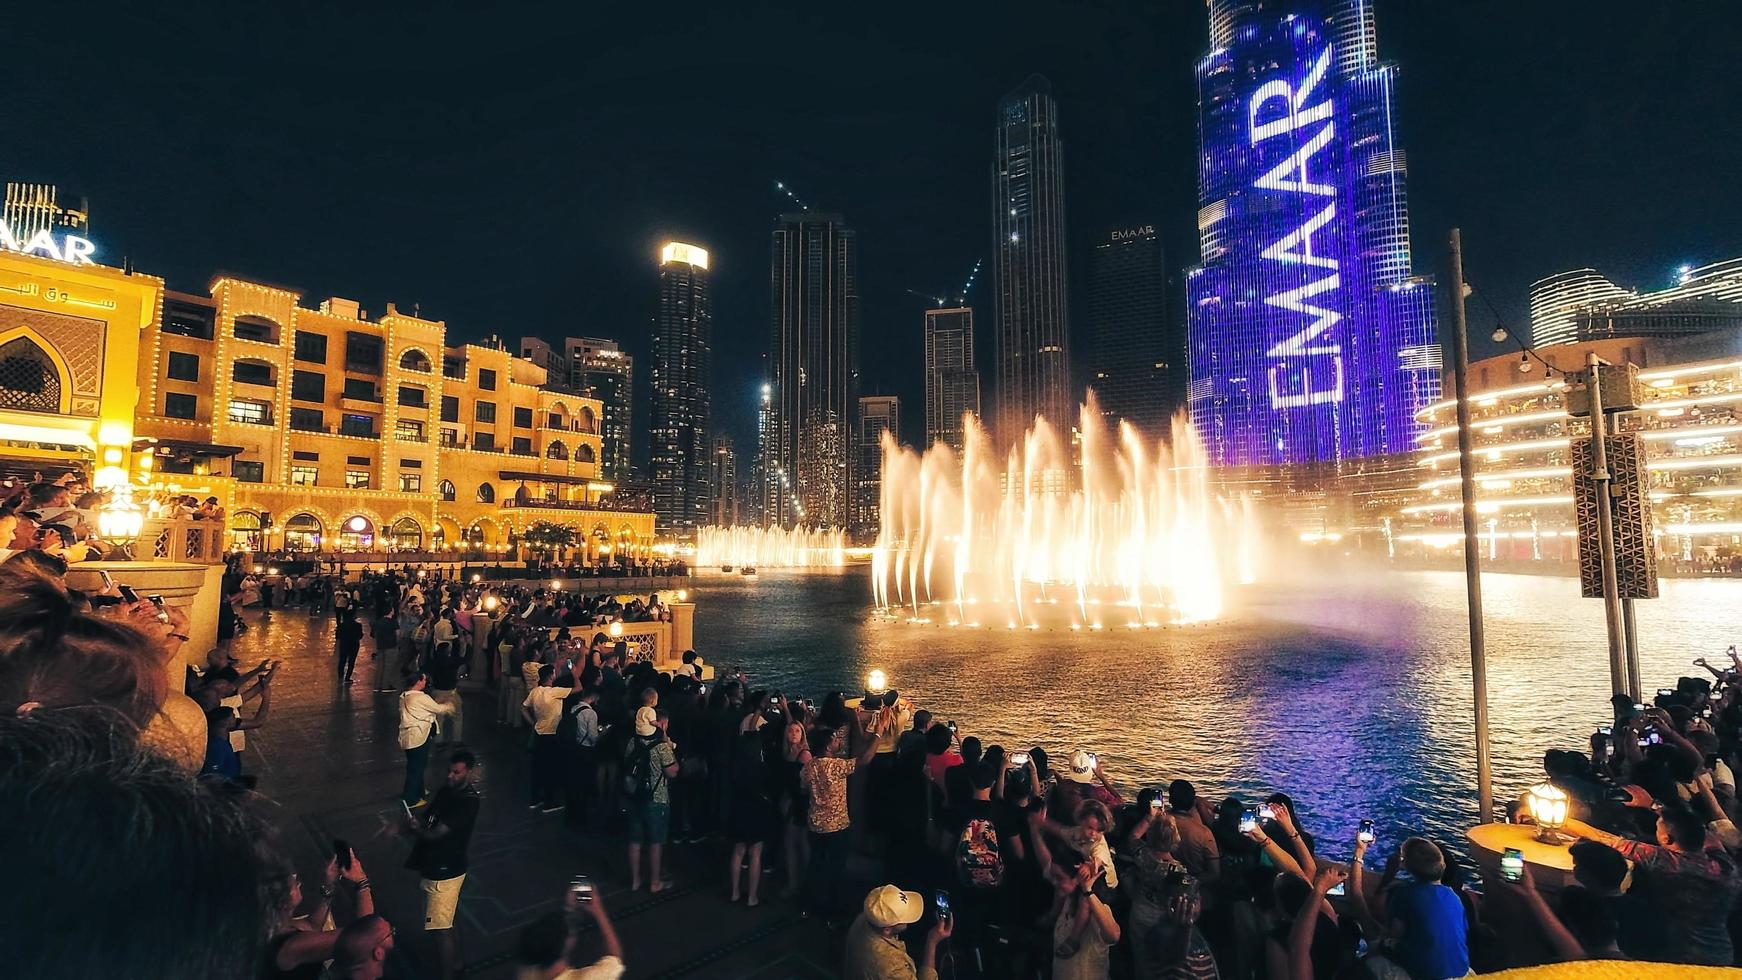 dubai, emiratos árabes unidos, 2022- récord de observación turística la fuente de dubai es el sistema de fuente coreografiado más grande del mundo ubicado en el lago burj khalifa hecho por el hombre foto